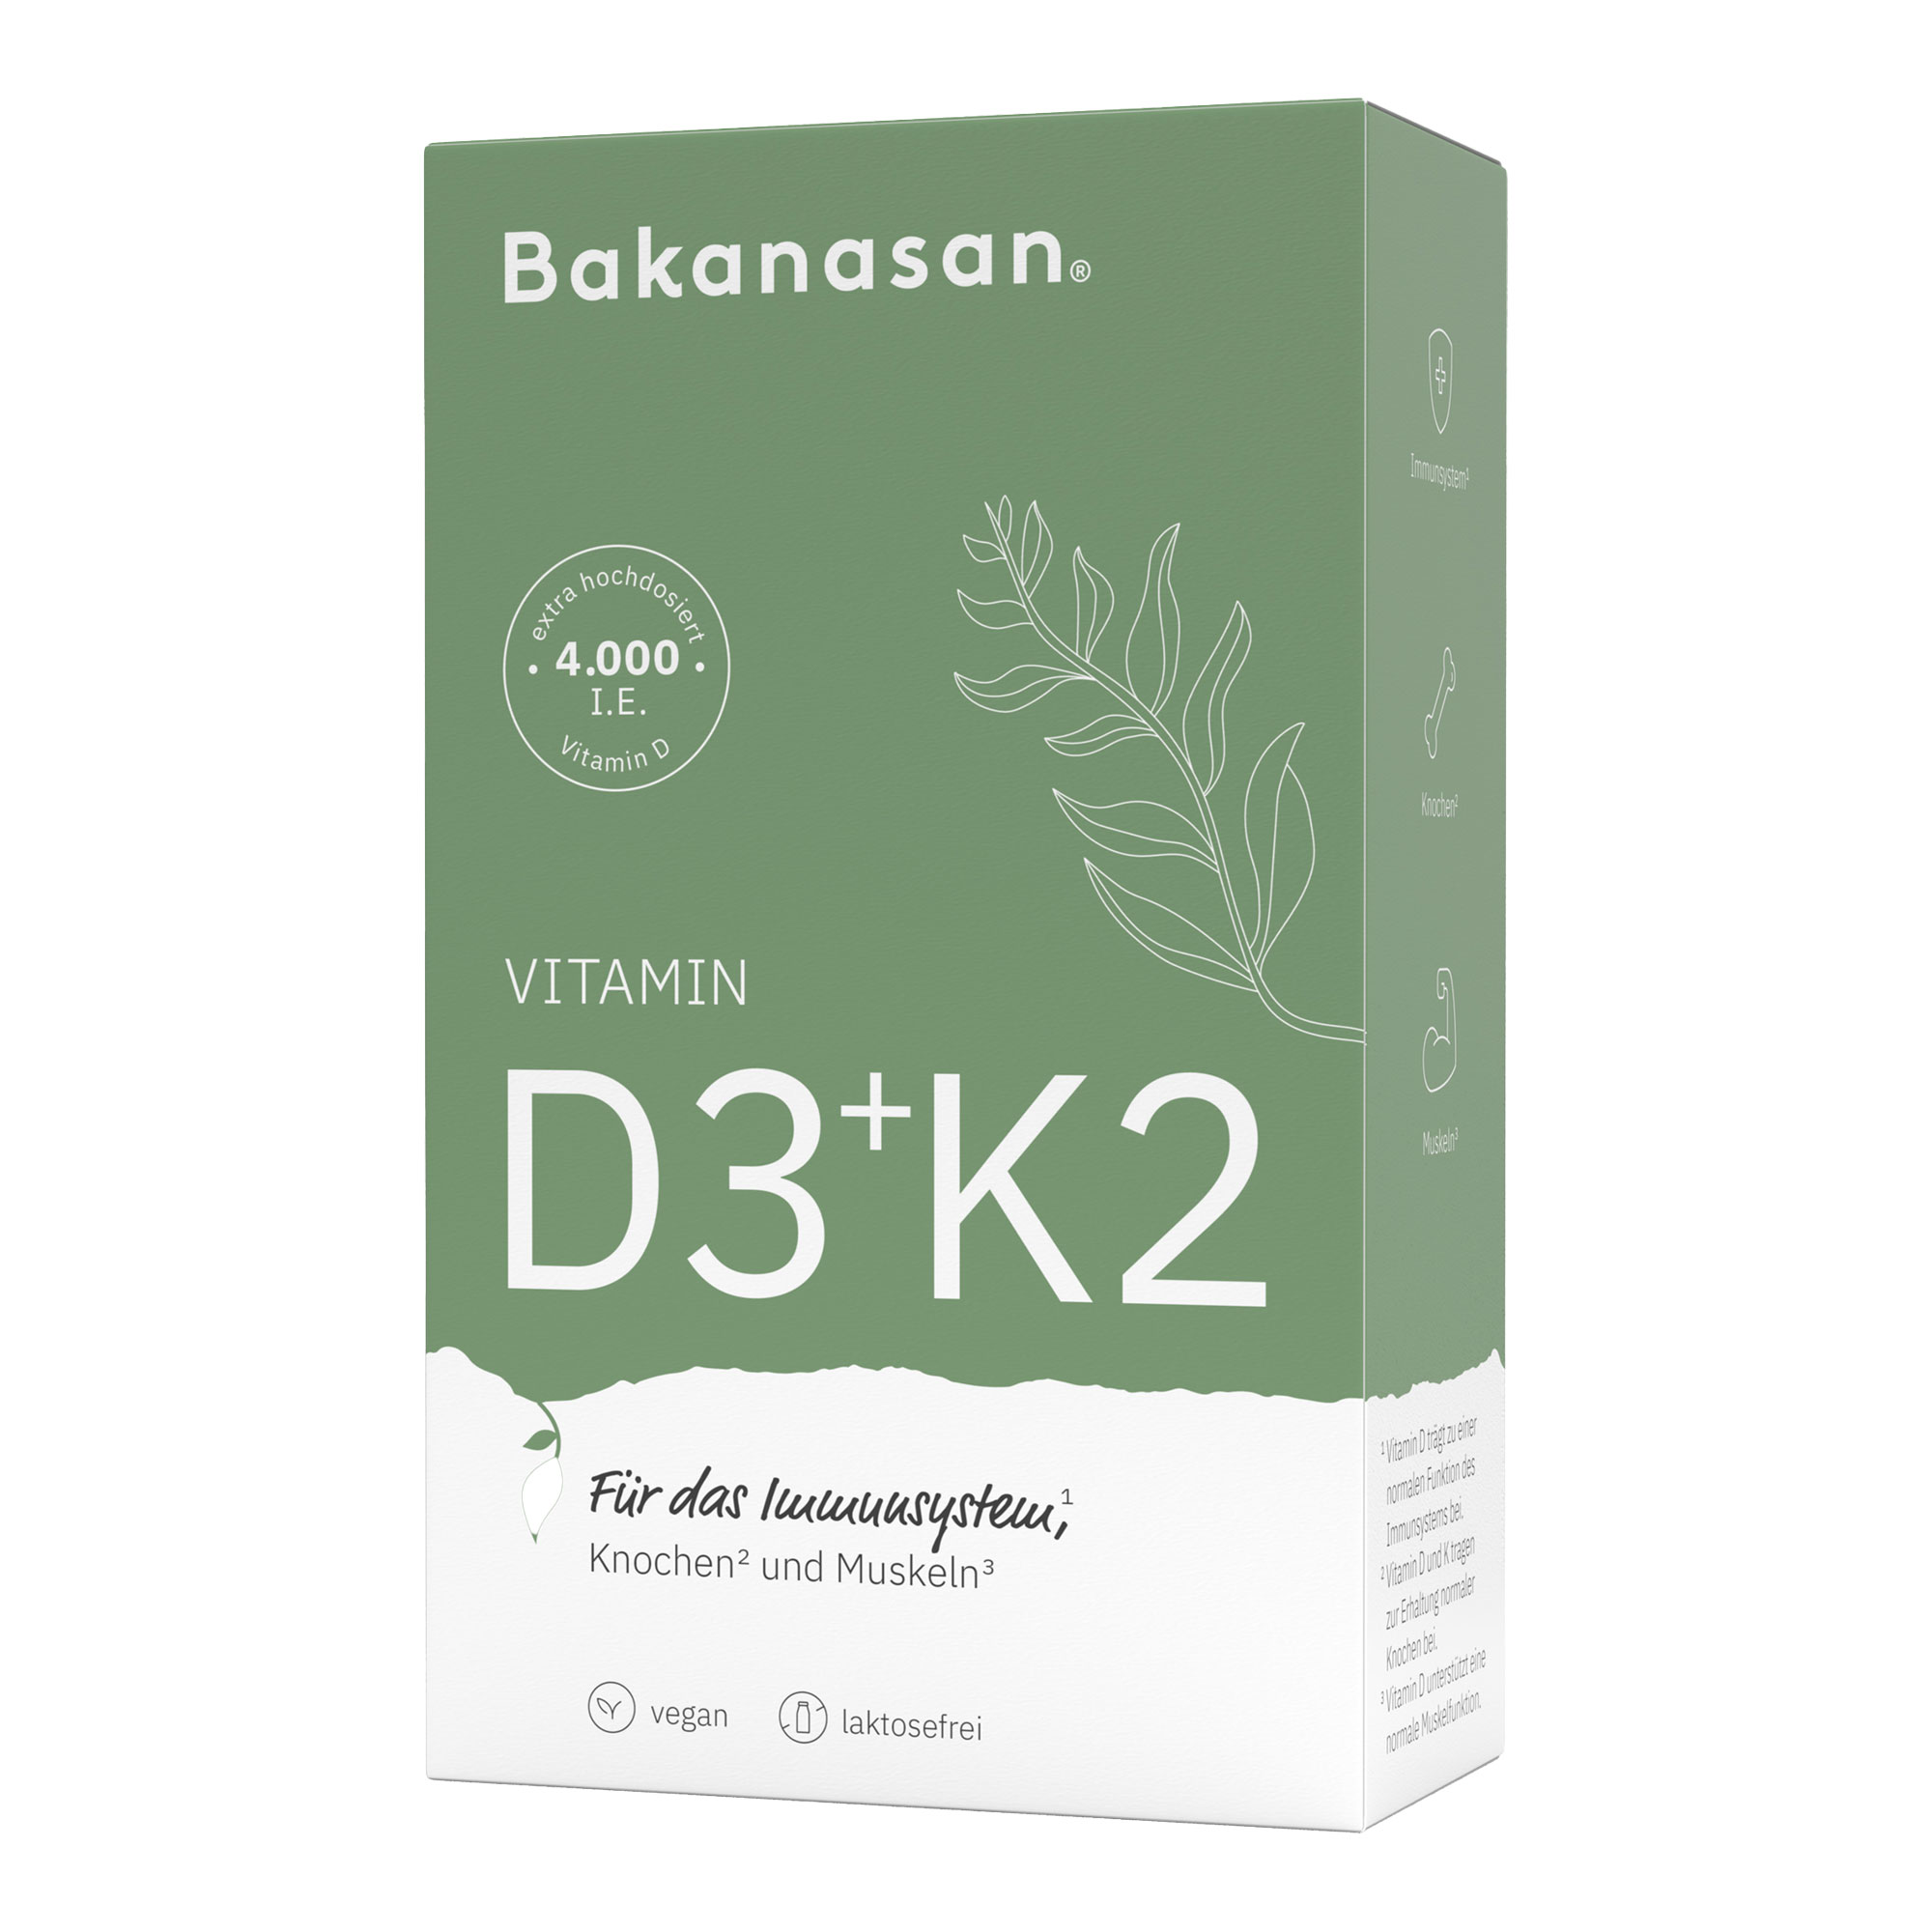 Nahrungsergänzungsmittel mit Vitamin D3, K2 und natürlichem Chlorella-Pulver.